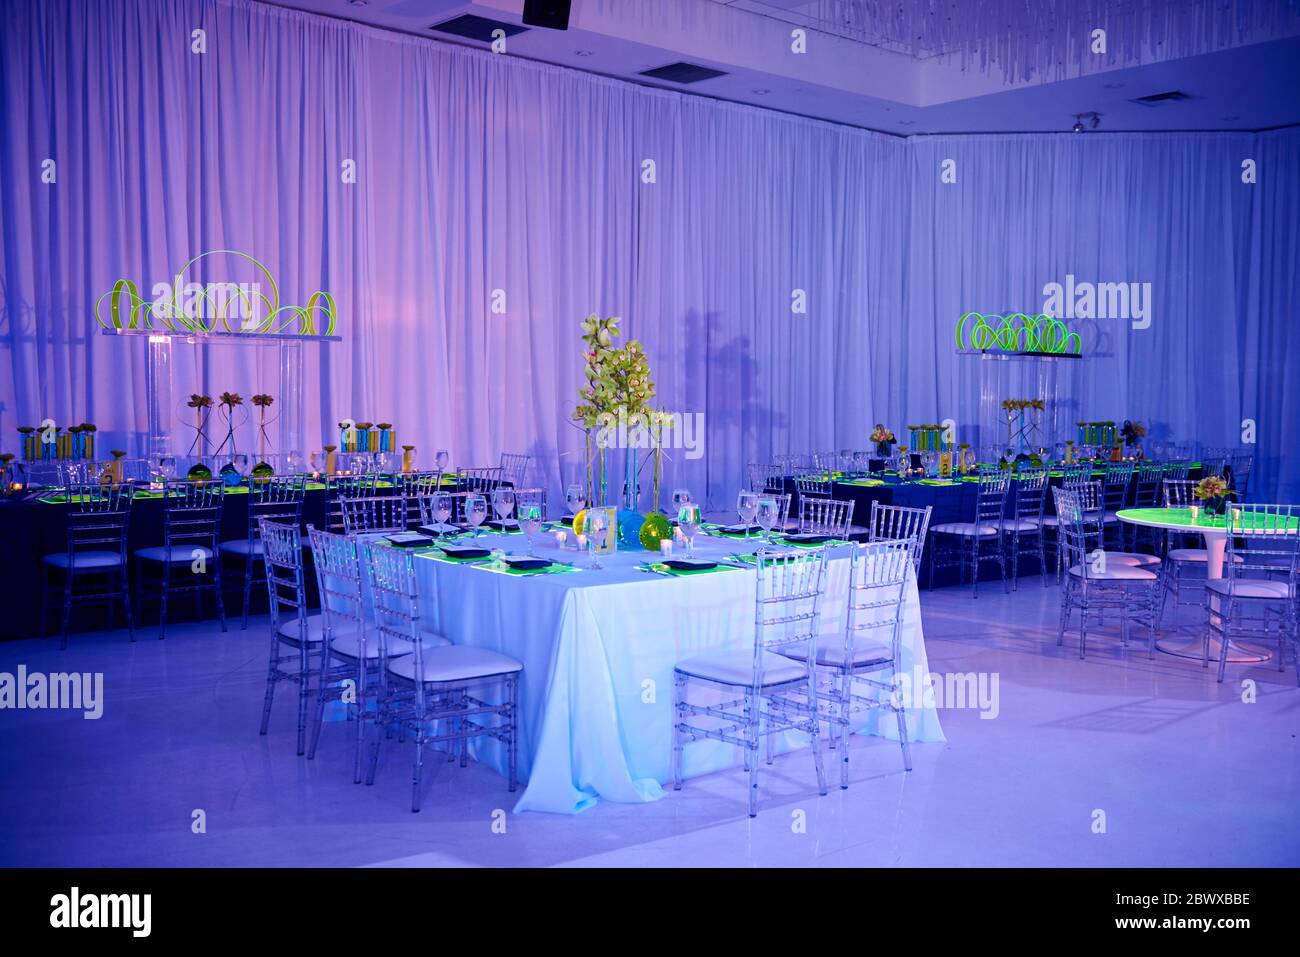 Table carrée élégante pour un mariage ou un événement social dans la salle de bal, orchidée et chaises en lucite, murs drapés Banque D'Images